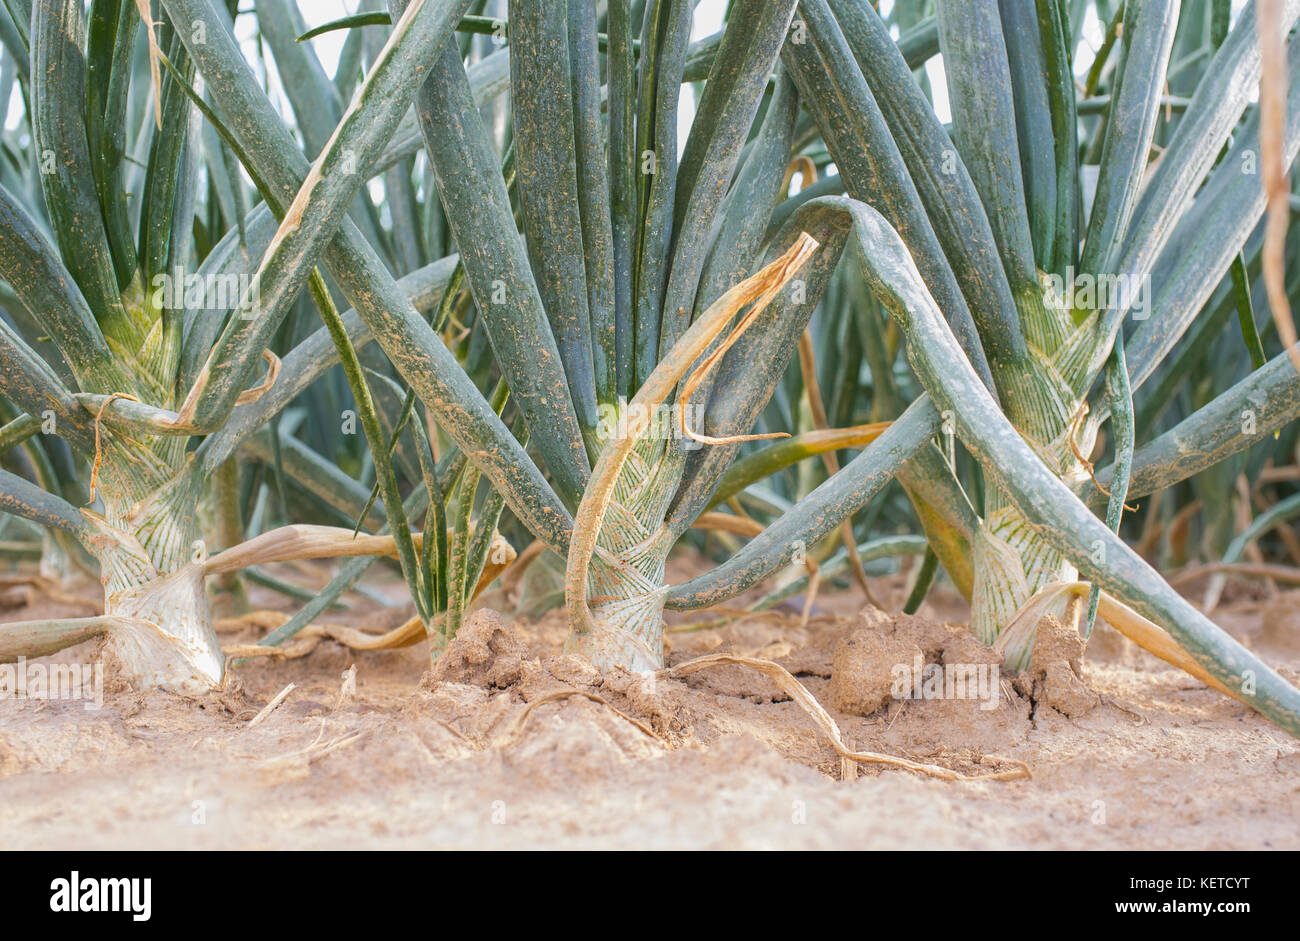 Weiße Zwiebelzwiebeln für die dehydrierte Lebensmittelindustrie. Nahaufnahme. Guadiana Meadows, Badajoz, Spanien Stockfoto